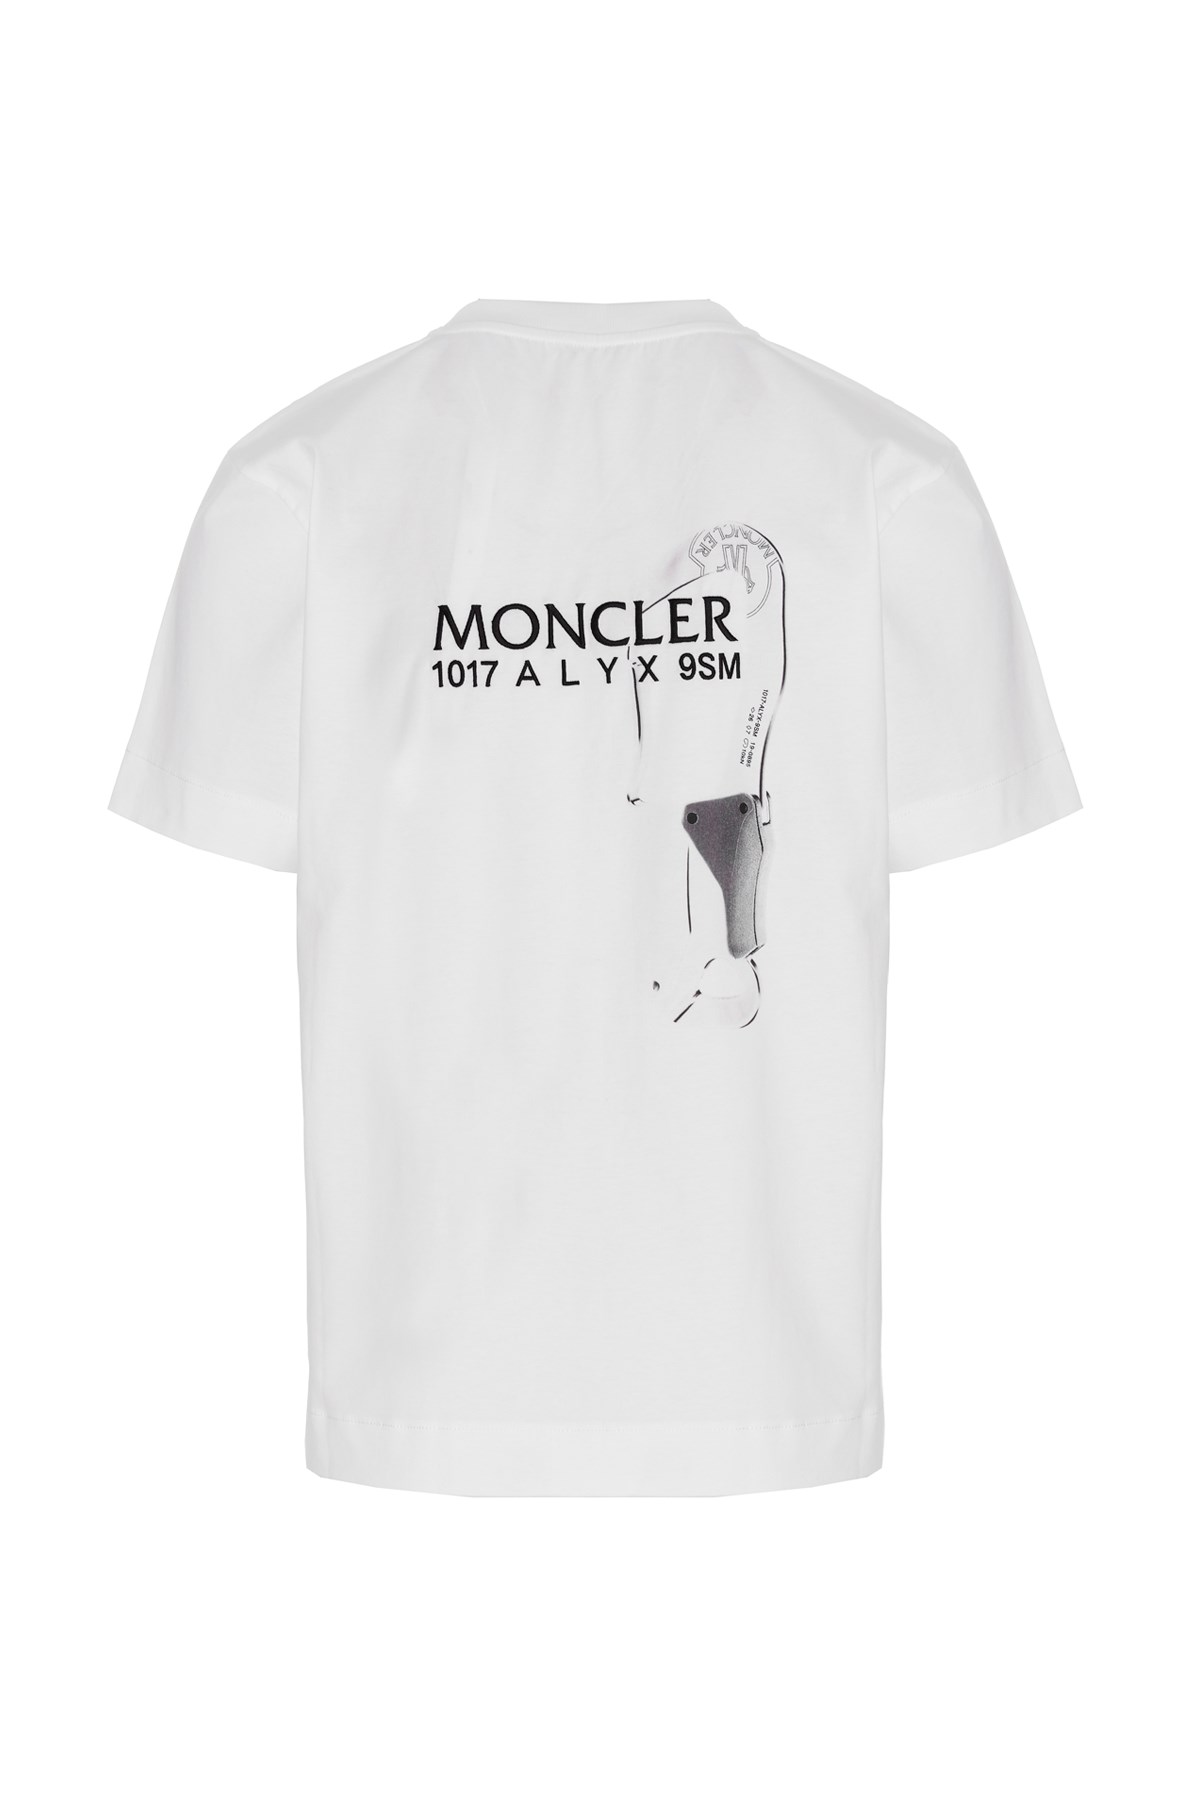 MONCLER GENIUS Moncler Genius X 1017 Alyx 9Sm T-Shirt